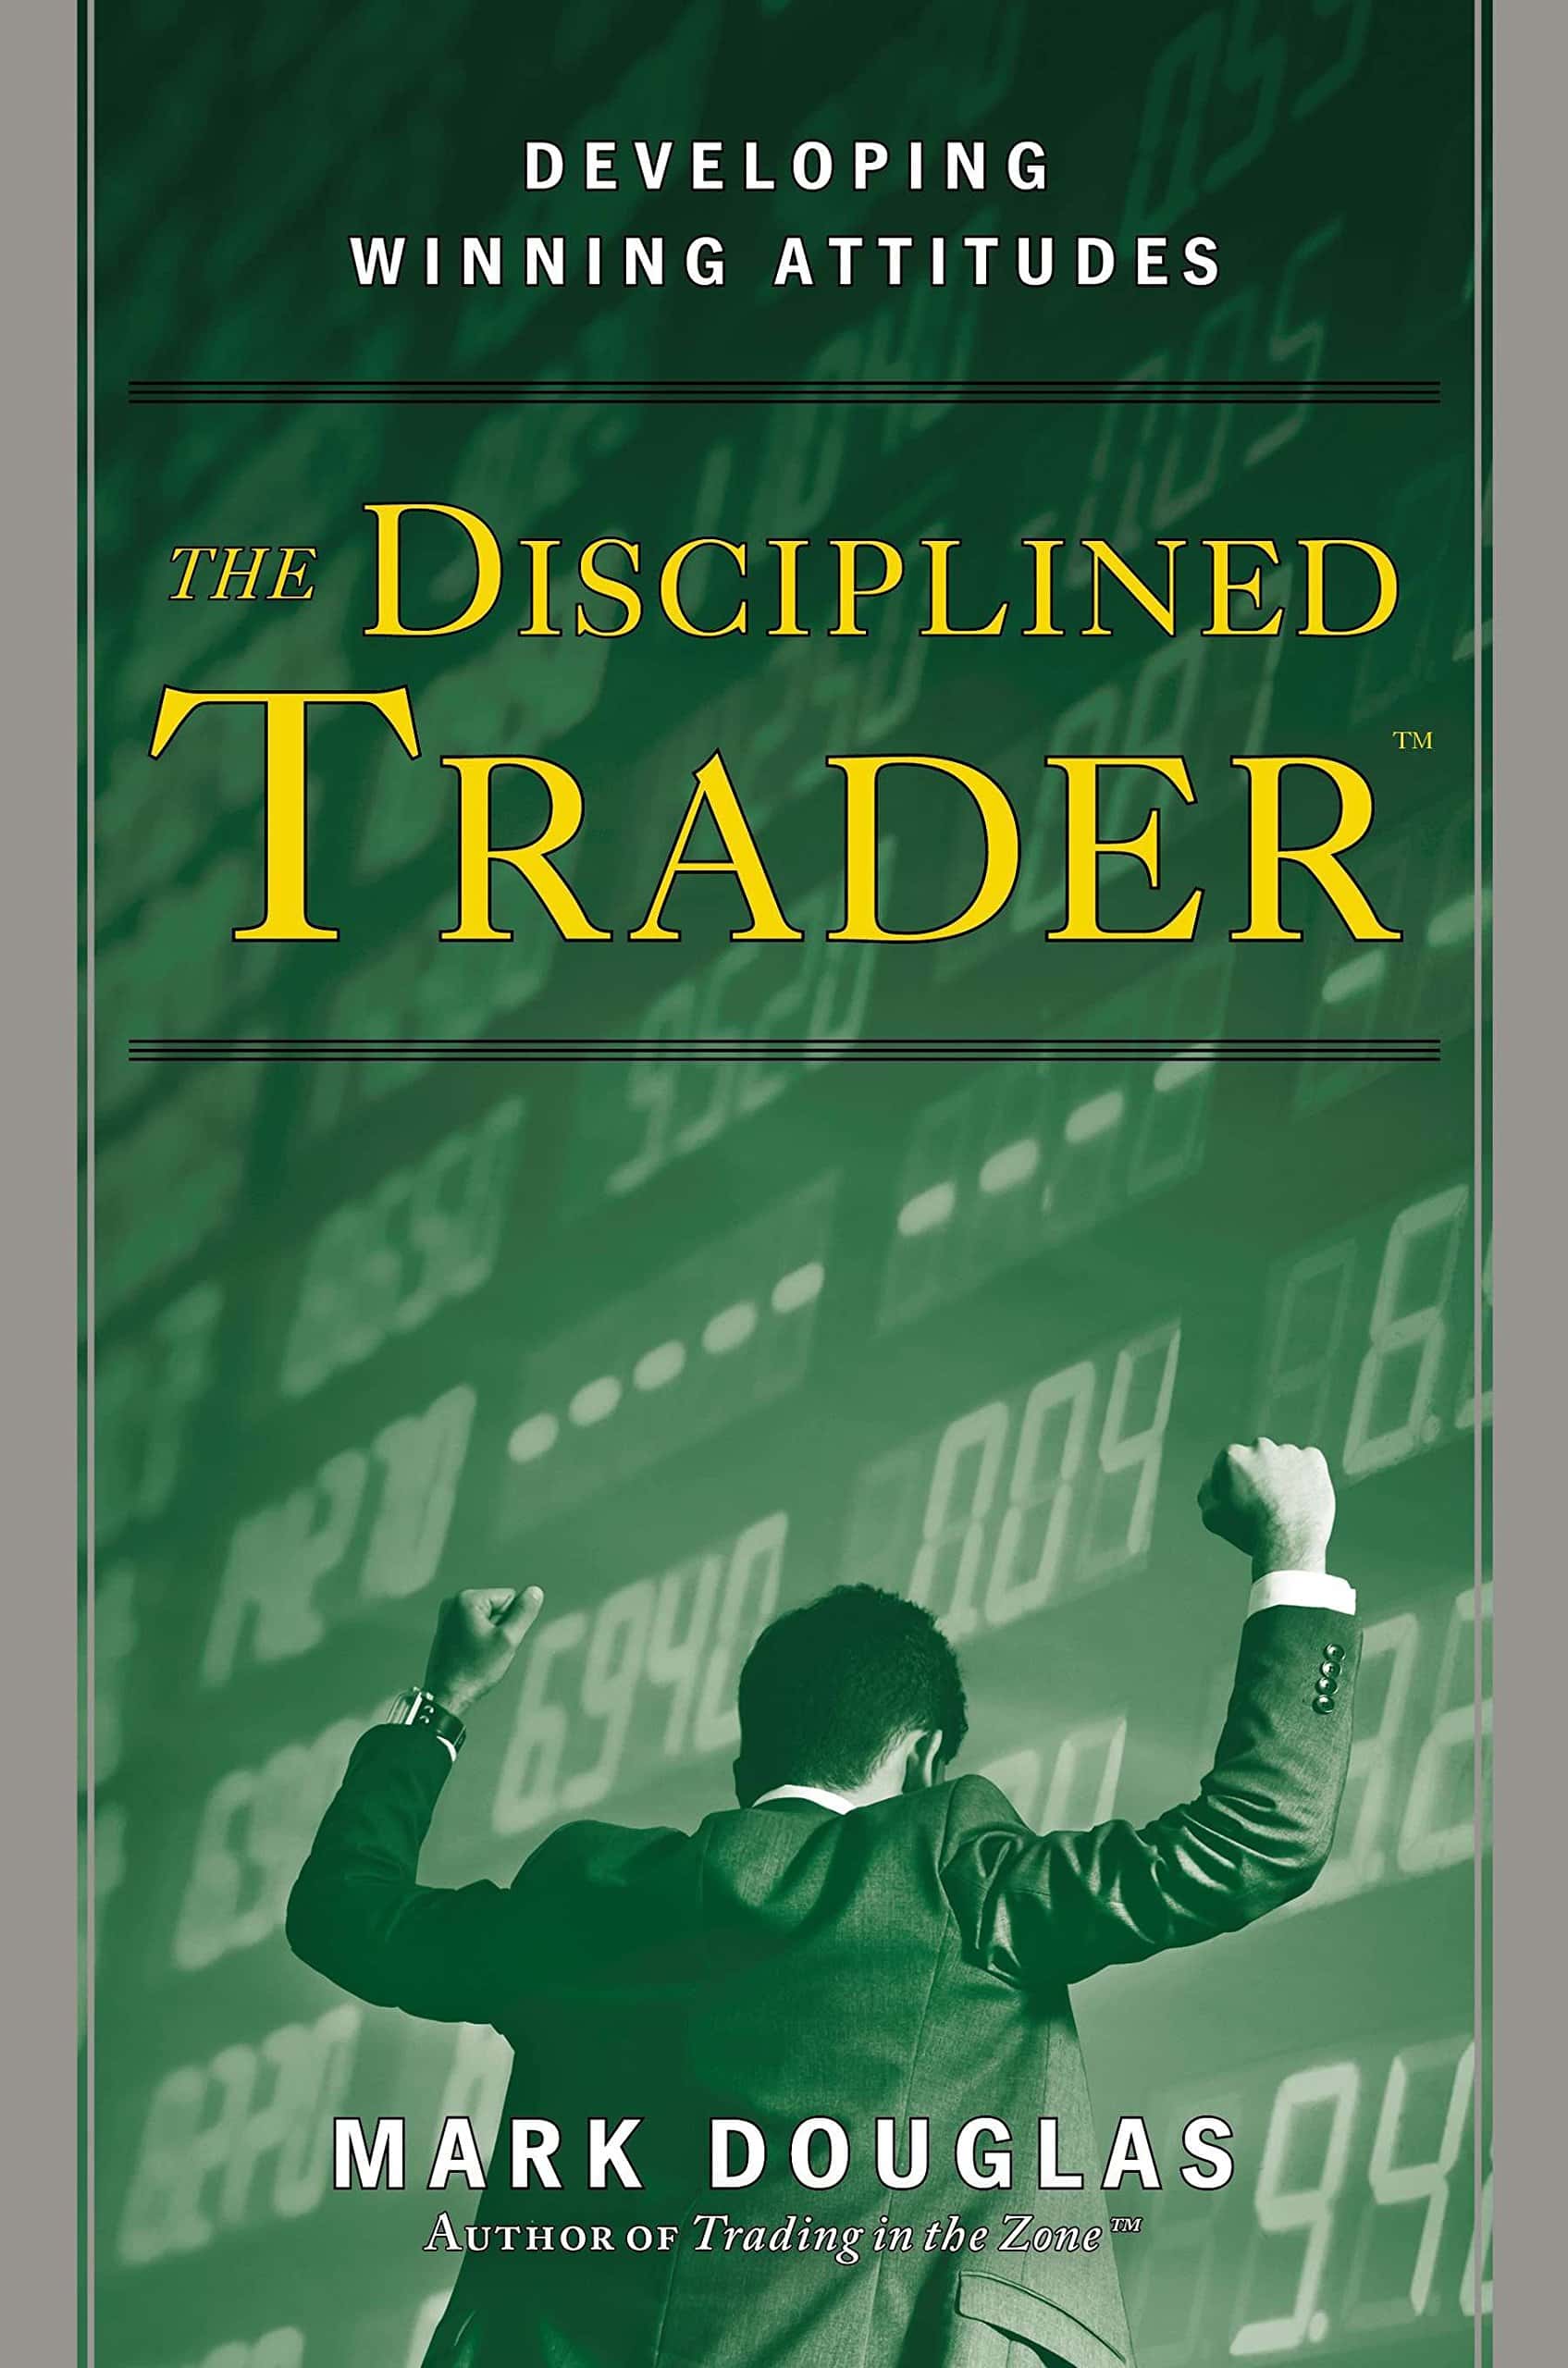 Der disziplinierte Trader: So entwickeln Sie eine gewinnbringende Einstellung